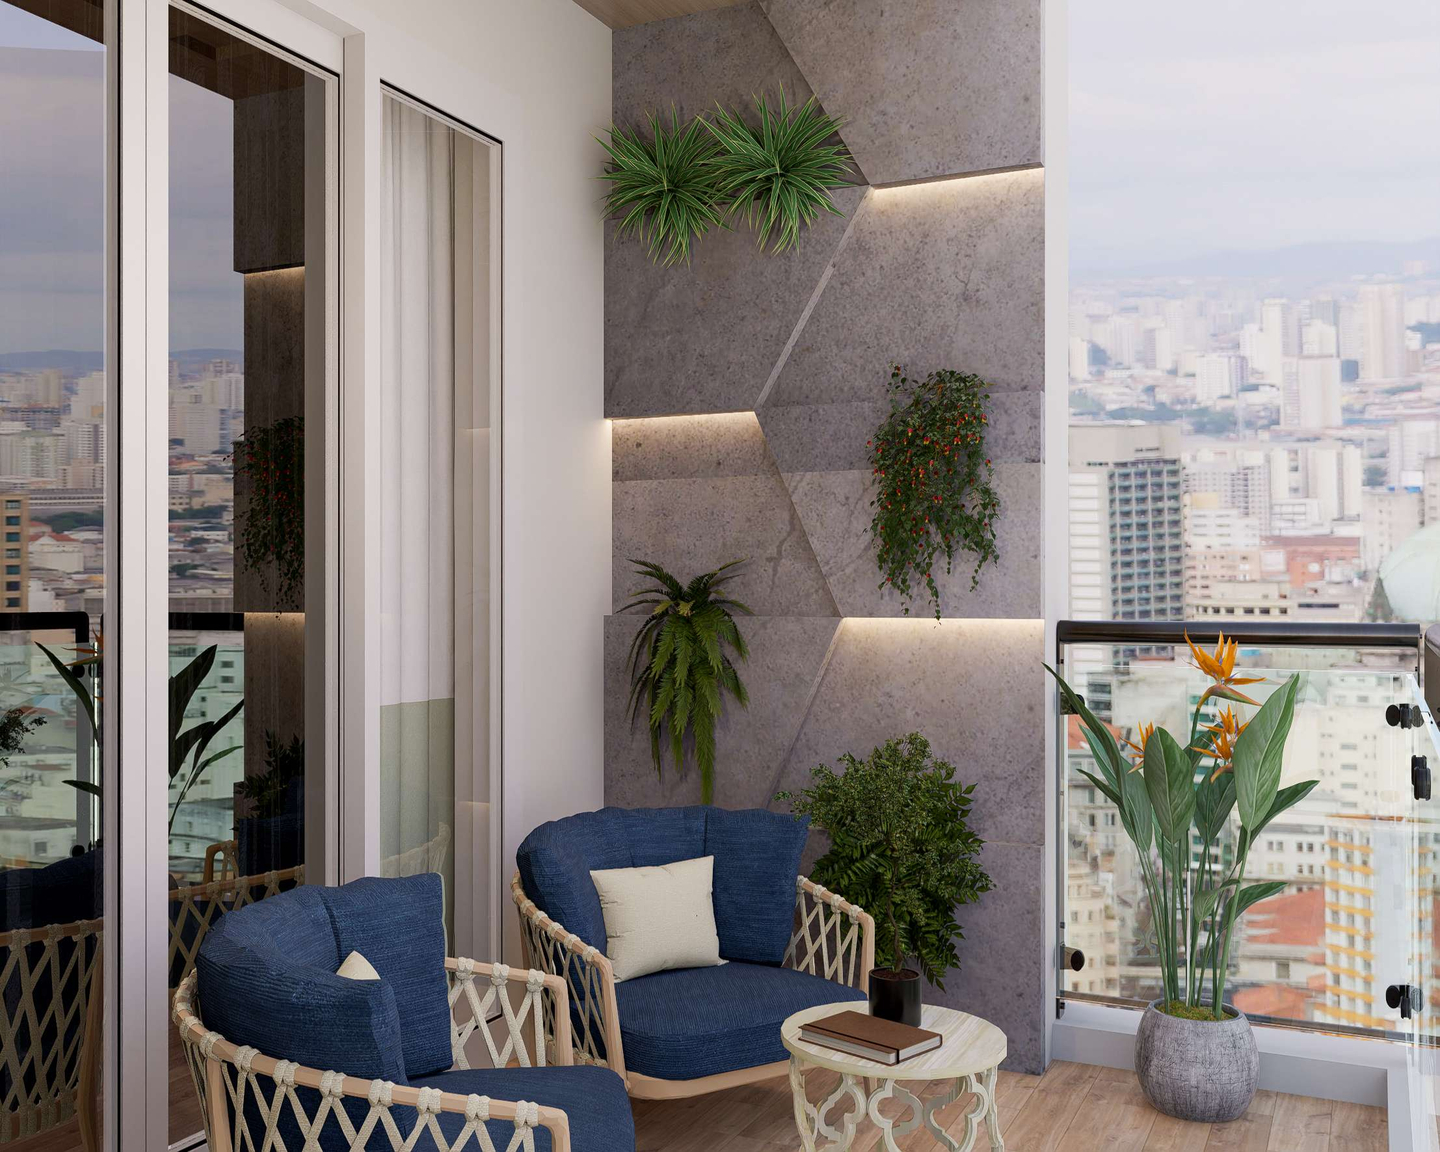 Tropical Balcony Design With Vertical Garden